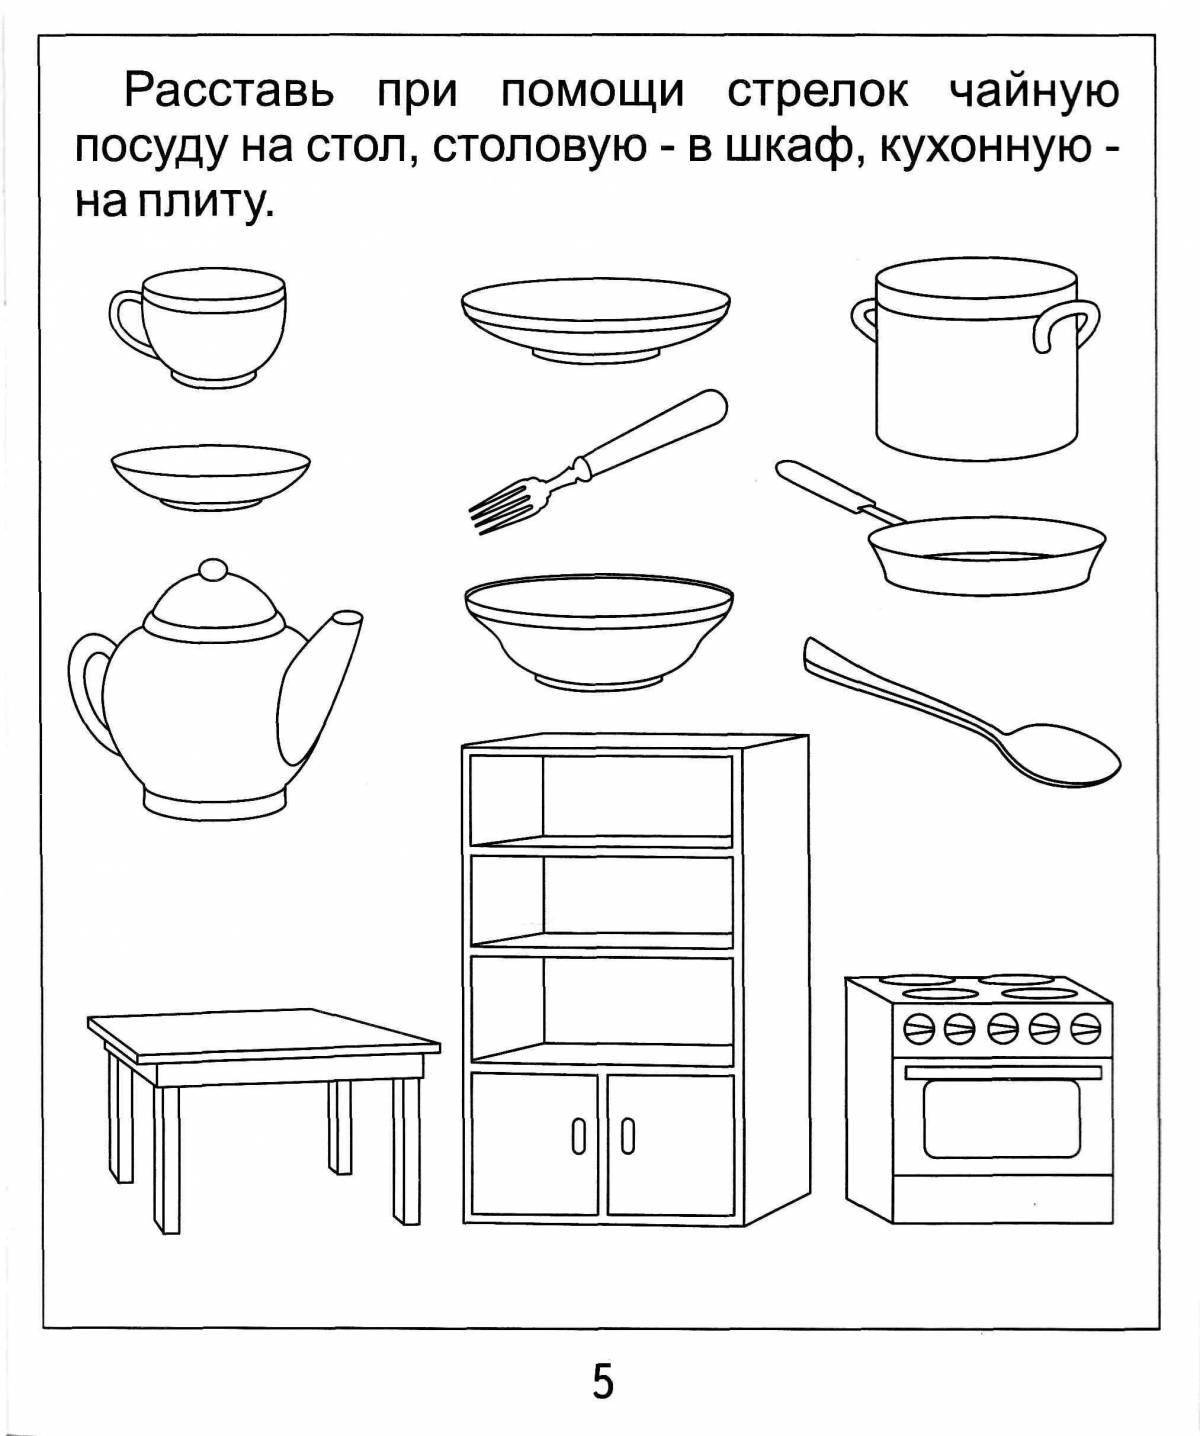 Посуда для детей дошкольного возраста #16